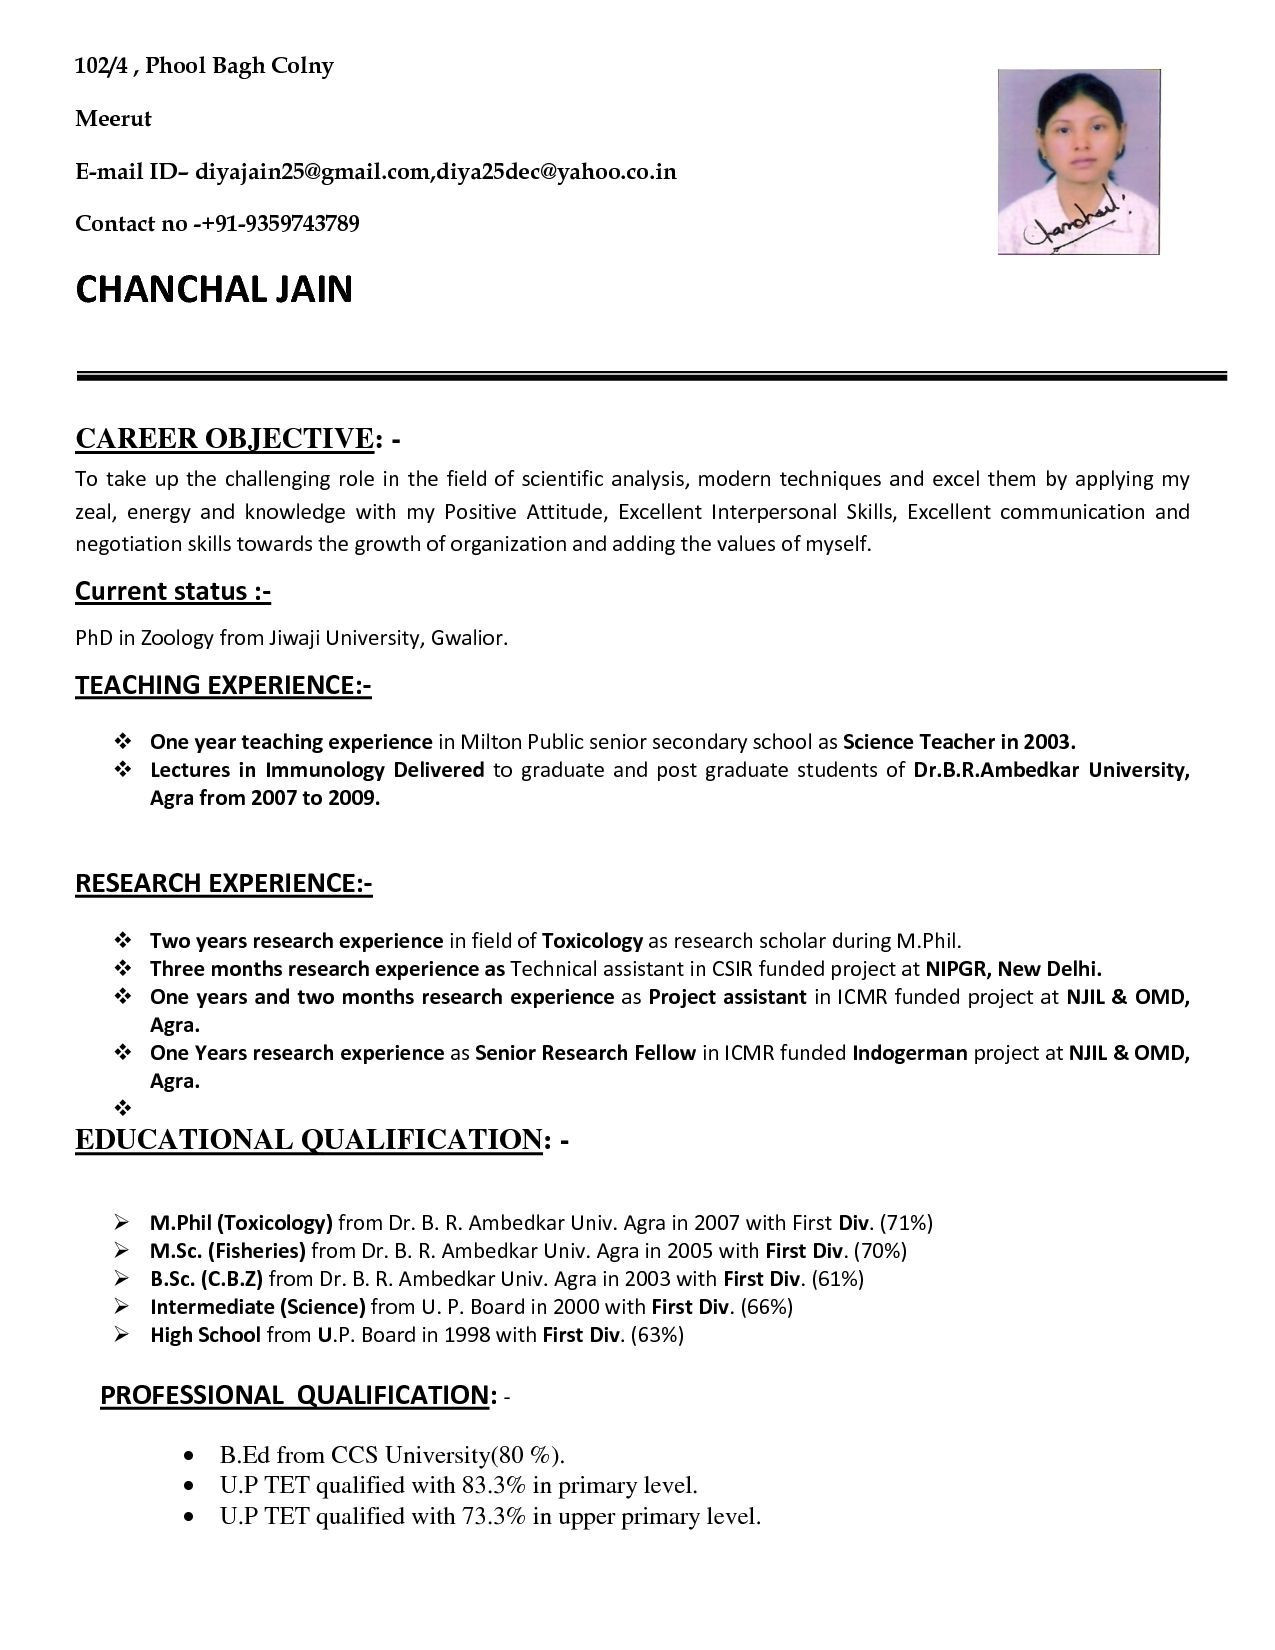 Sample Resume for B Ed Teachers Resume format for School Teacher Job It Cover Letter Sample within …